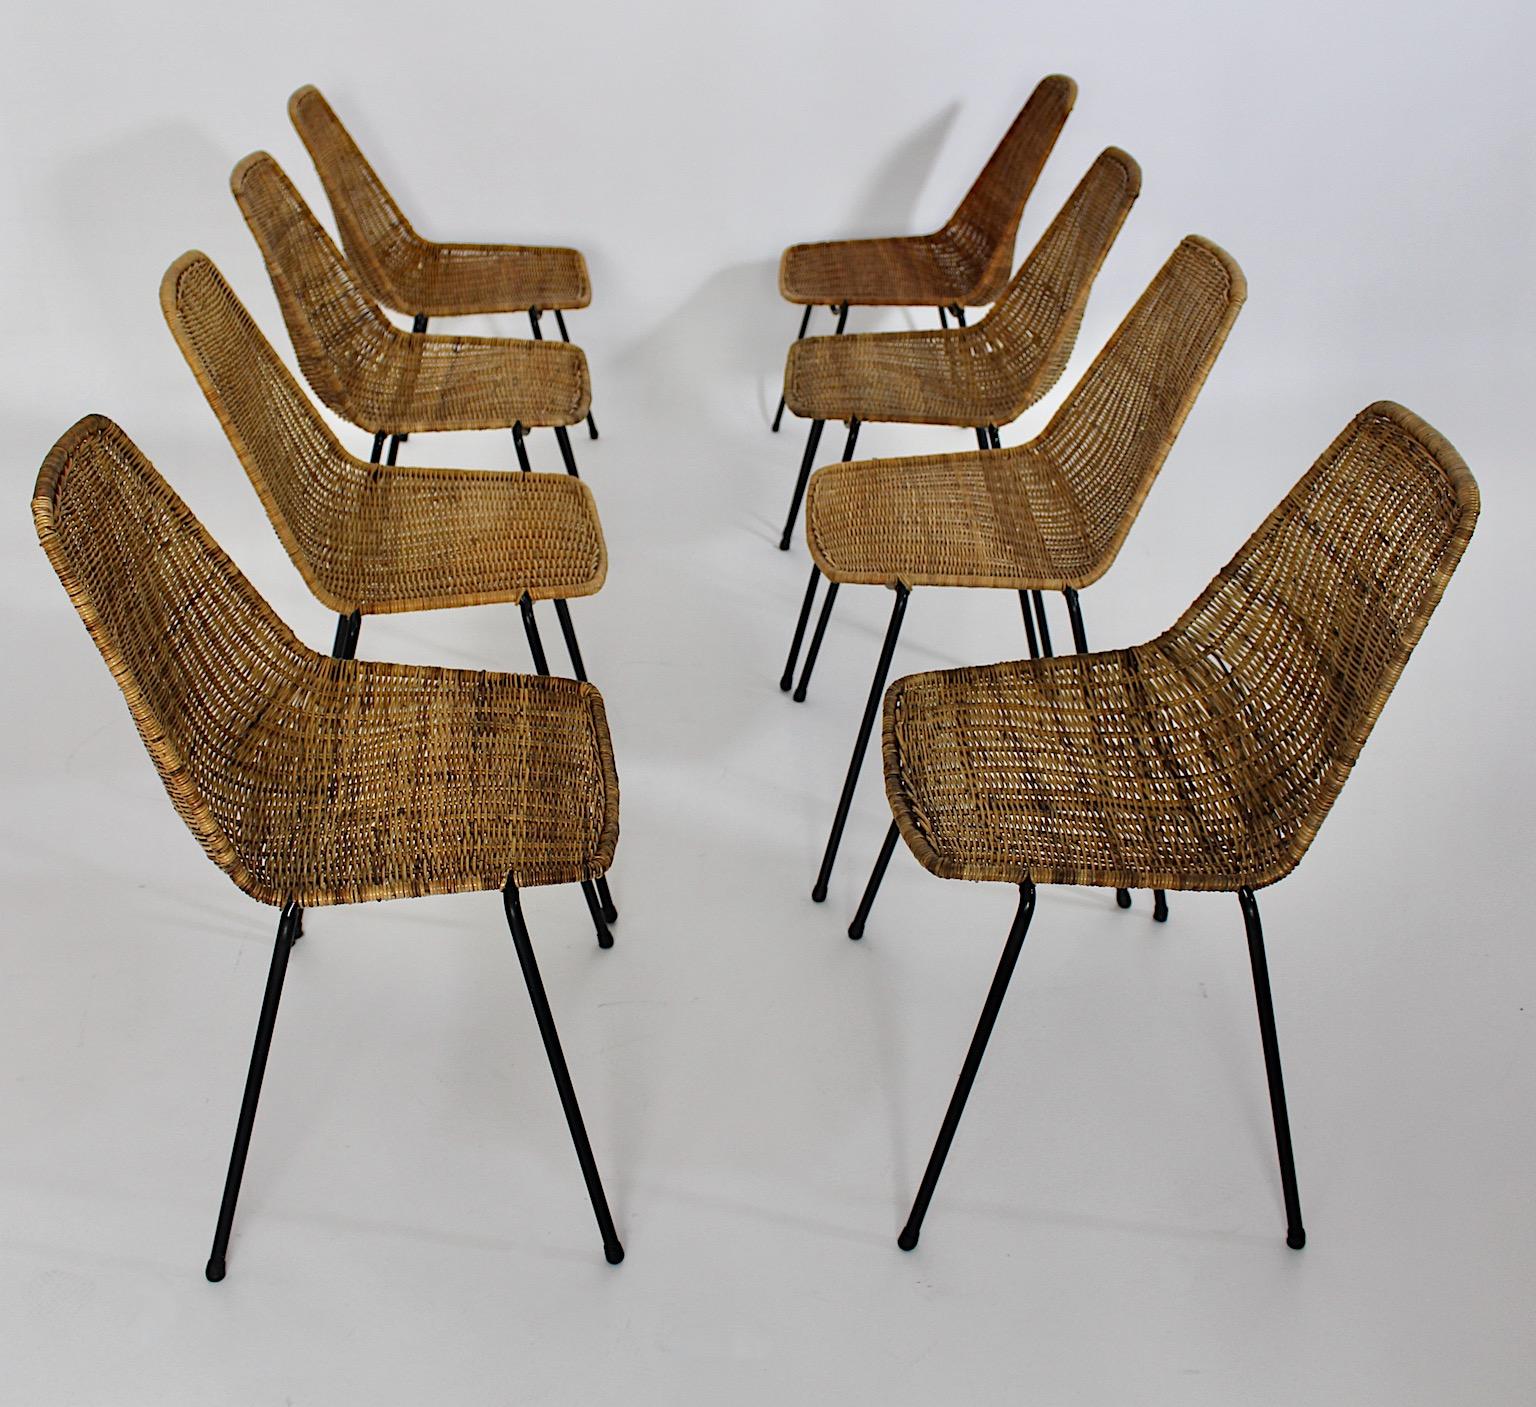 Organische Vintage und authentische acht Esszimmerstühle oder Stühle aus Rattan und Metall von Gian Franco Legler 1950er Jahre.
Eine fabelhafte seltene und authentische acht ( 8 ) Esszimmerstühle oder Sessel mit einer sehr bequemen Sitzschale aus